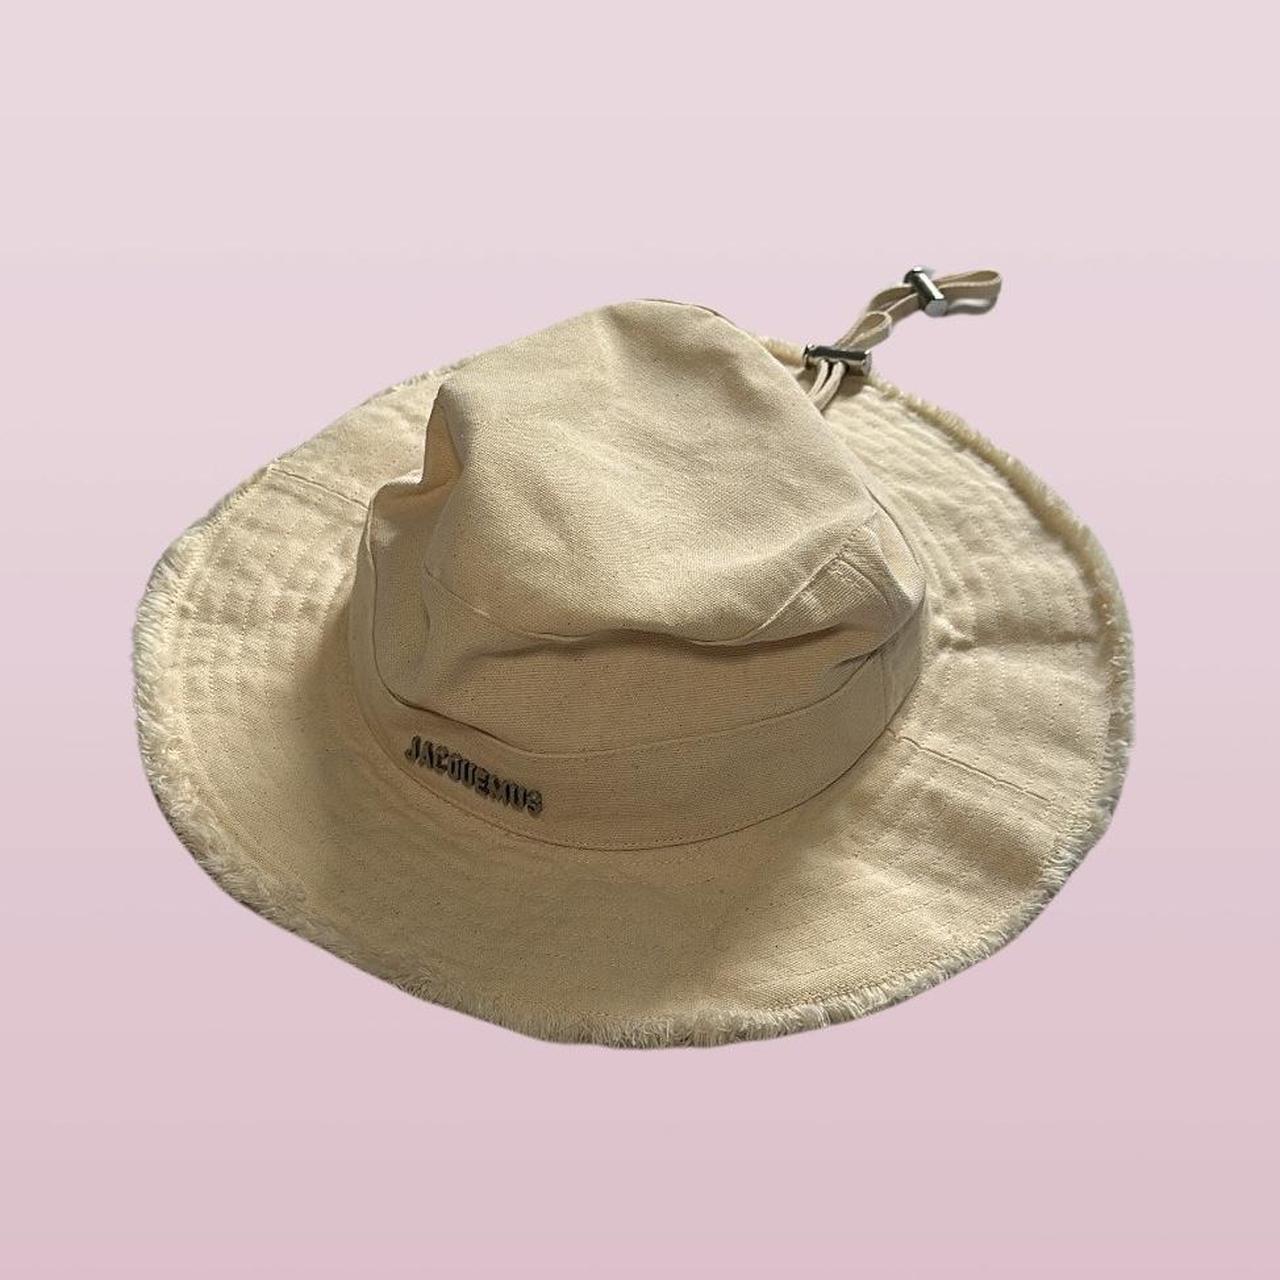 Original Panama Jack Canvas Safari Fishing Hat Tan - Depop